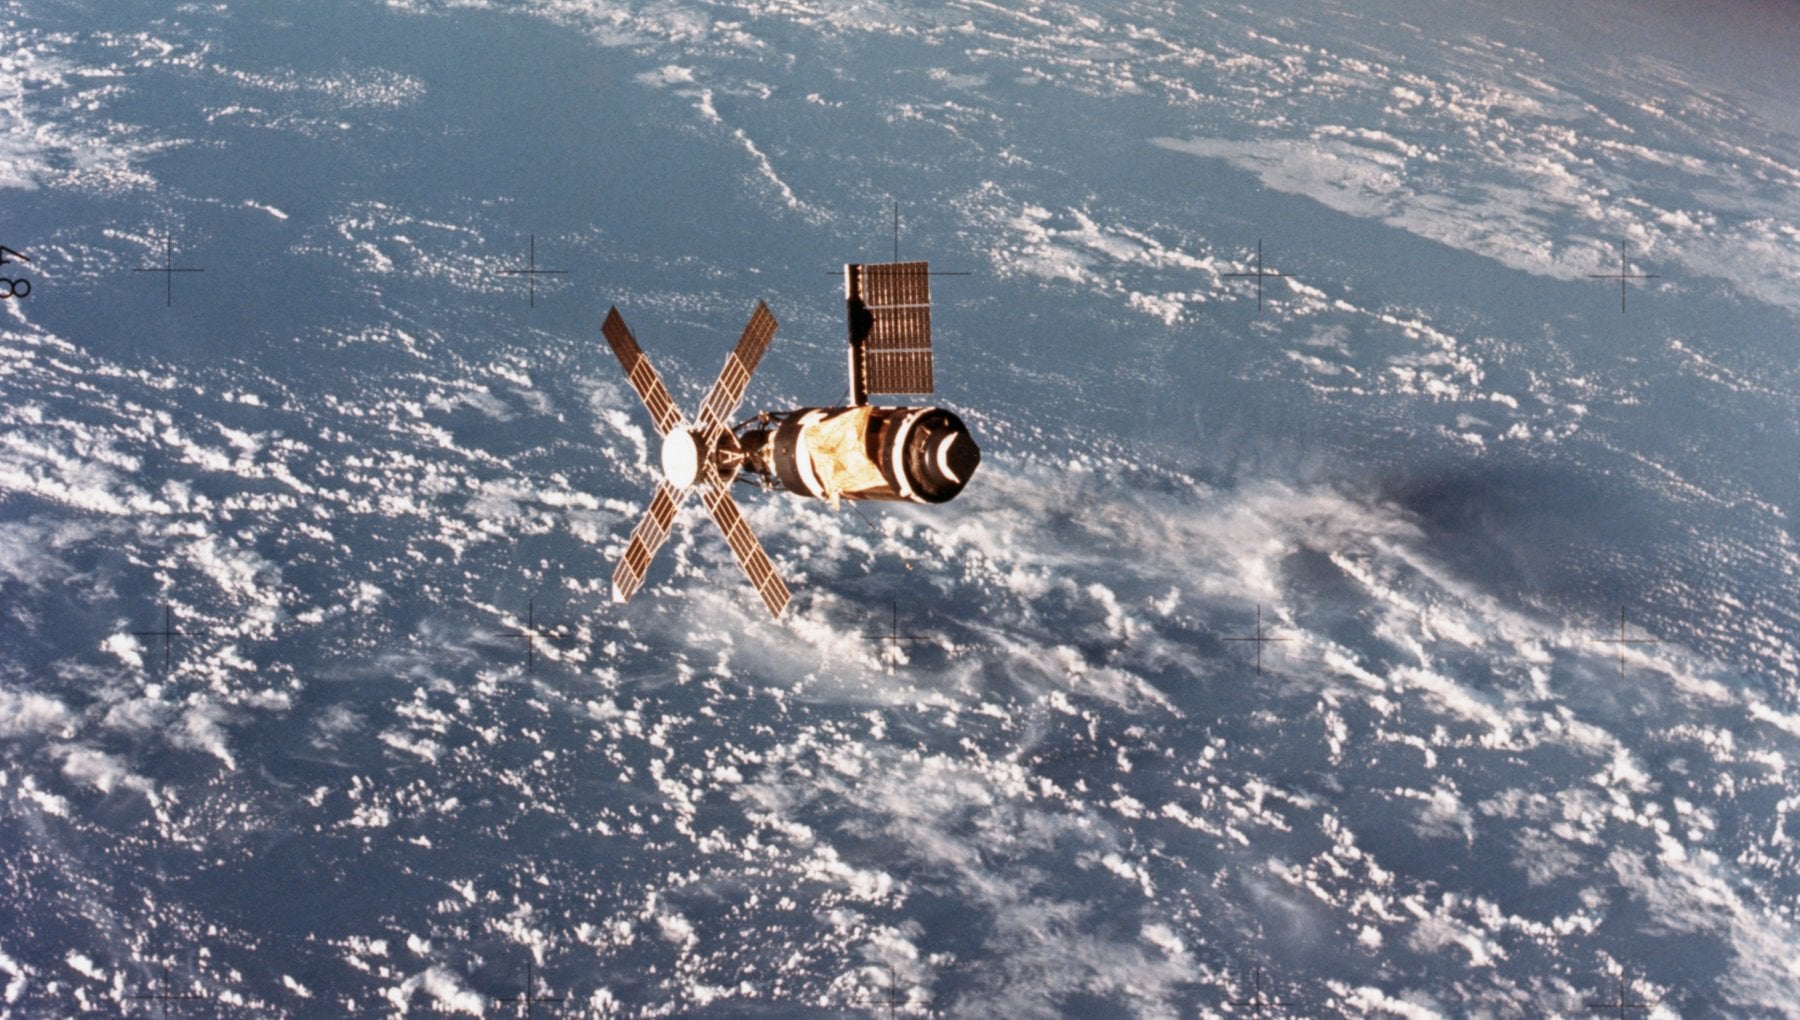 Dopo le missioni sulla Luna, la Nasa lancia Skylab: è la prima stazione spaziale